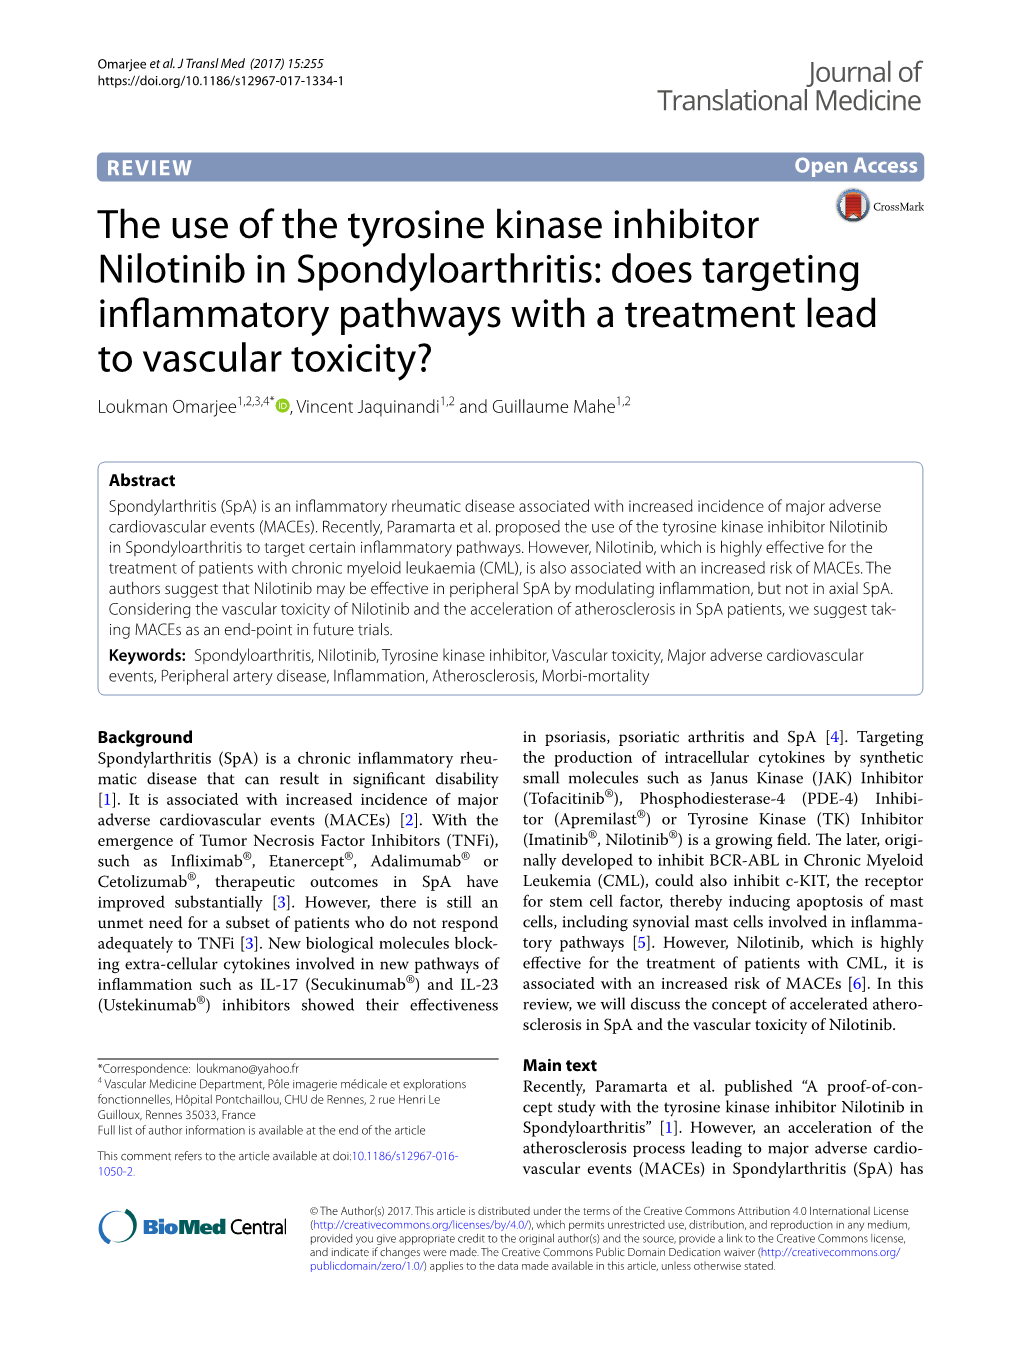 The Use of the Tyrosine Kinase Inhibitor